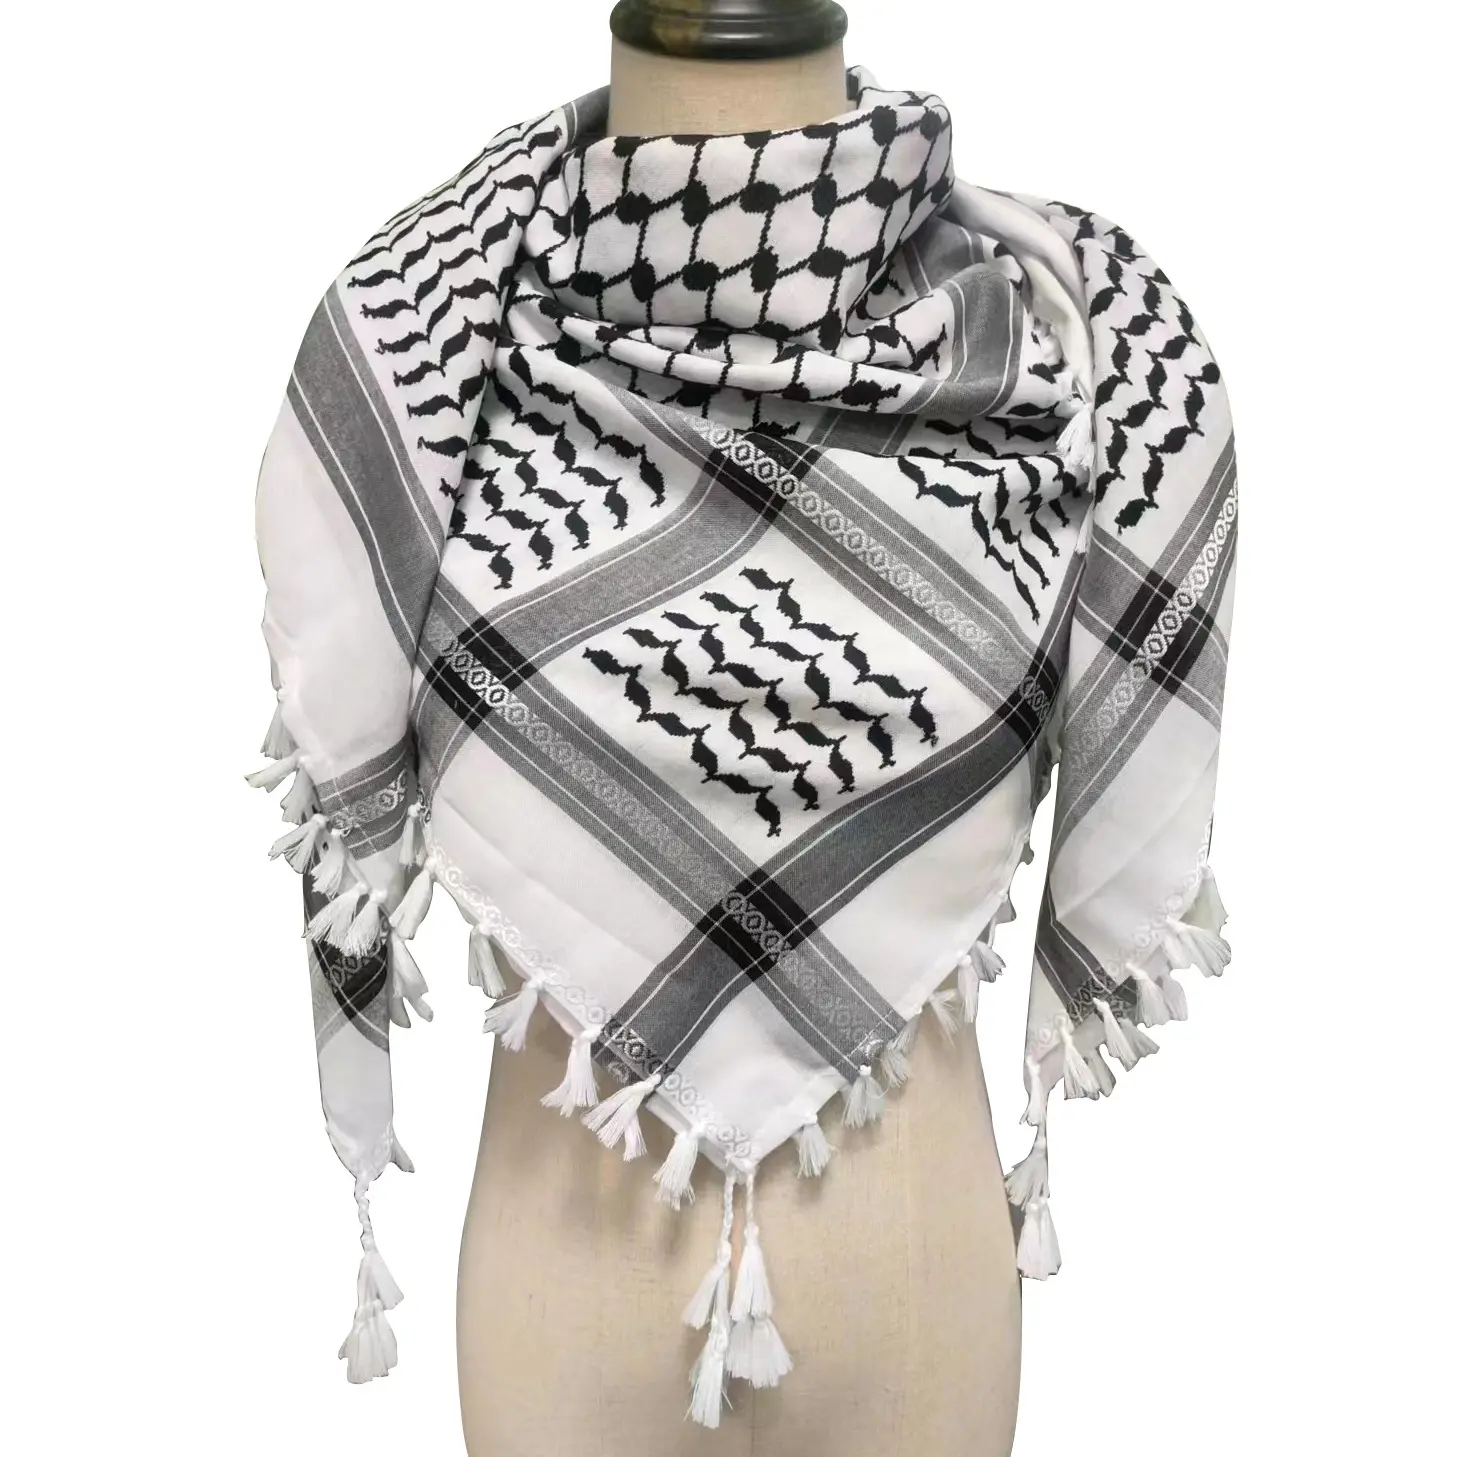 Nouveaux hommes tissés Keffiyeh écharpe arabe Palestine noir sur blanc Kufiya Arafat Hatta marque originale coton unisexe écharpe châle